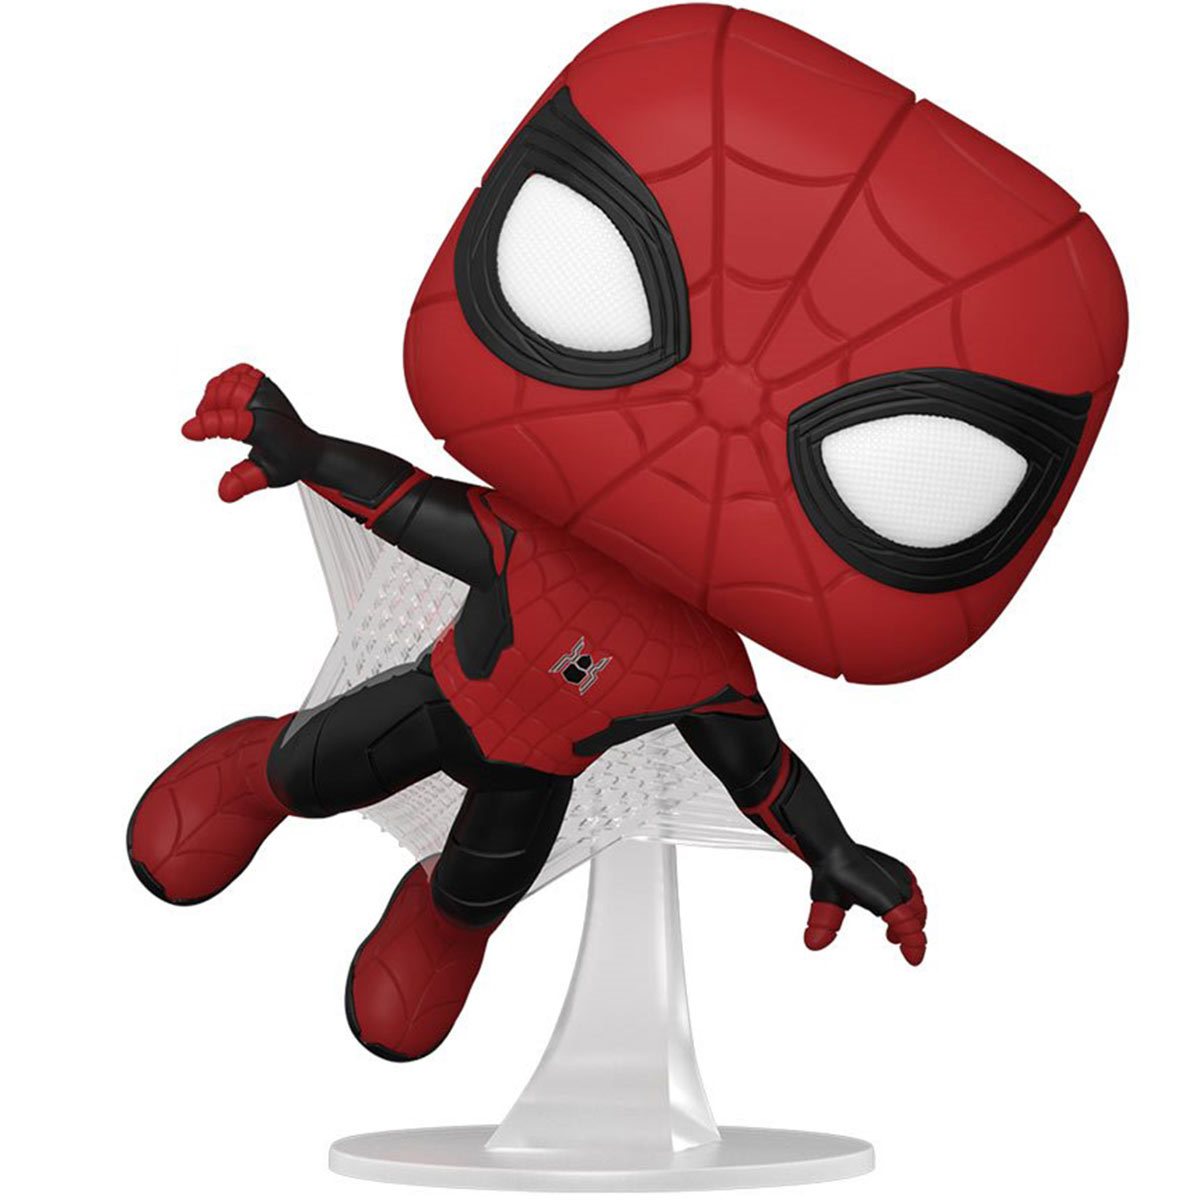 Funko Pop! Marvel: Spider-Man: No Way Home Spider-Man Upgraded Suit